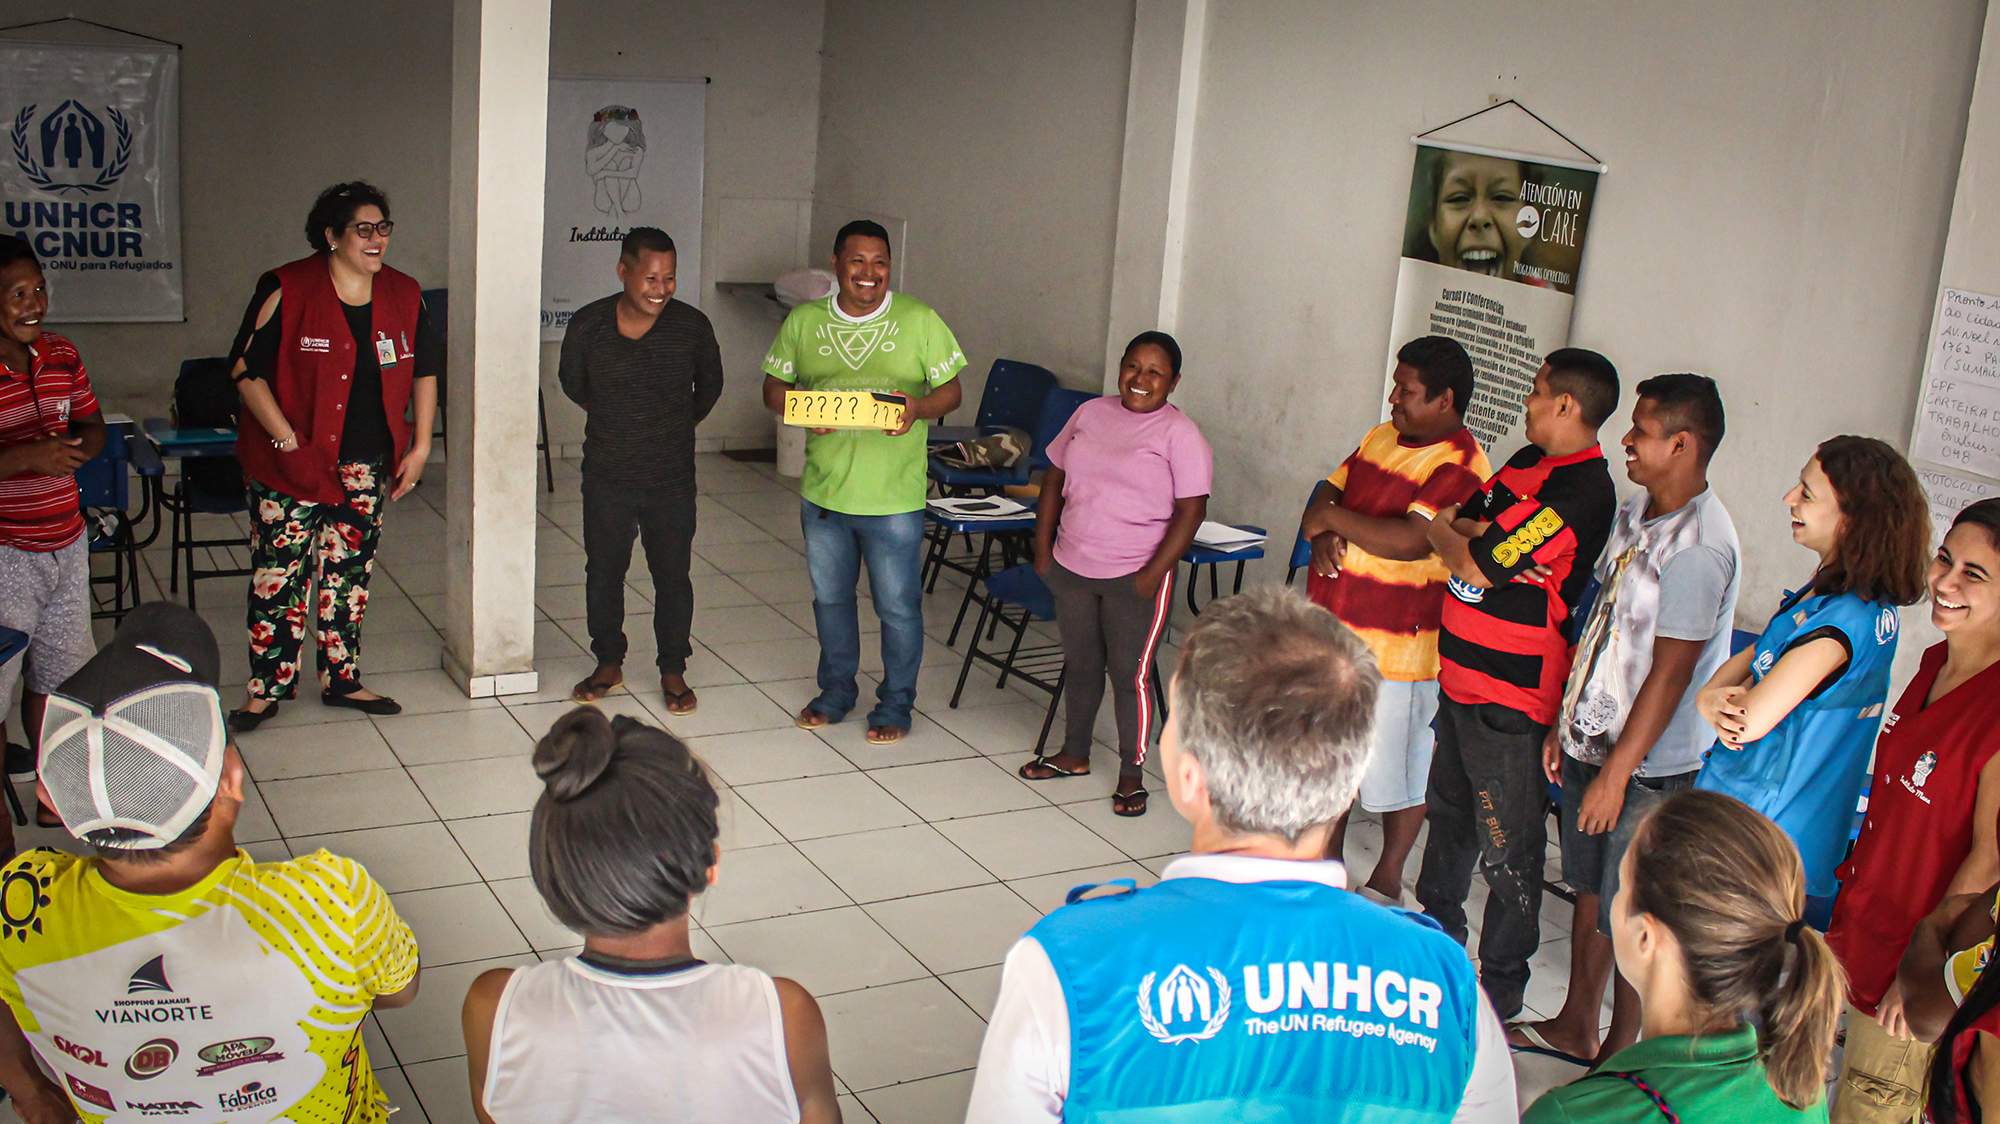 Grupo participa de mobilizações que envolvem roda de conversa, dinâmicas e treinamentos específicos sobre saúde no Brasil